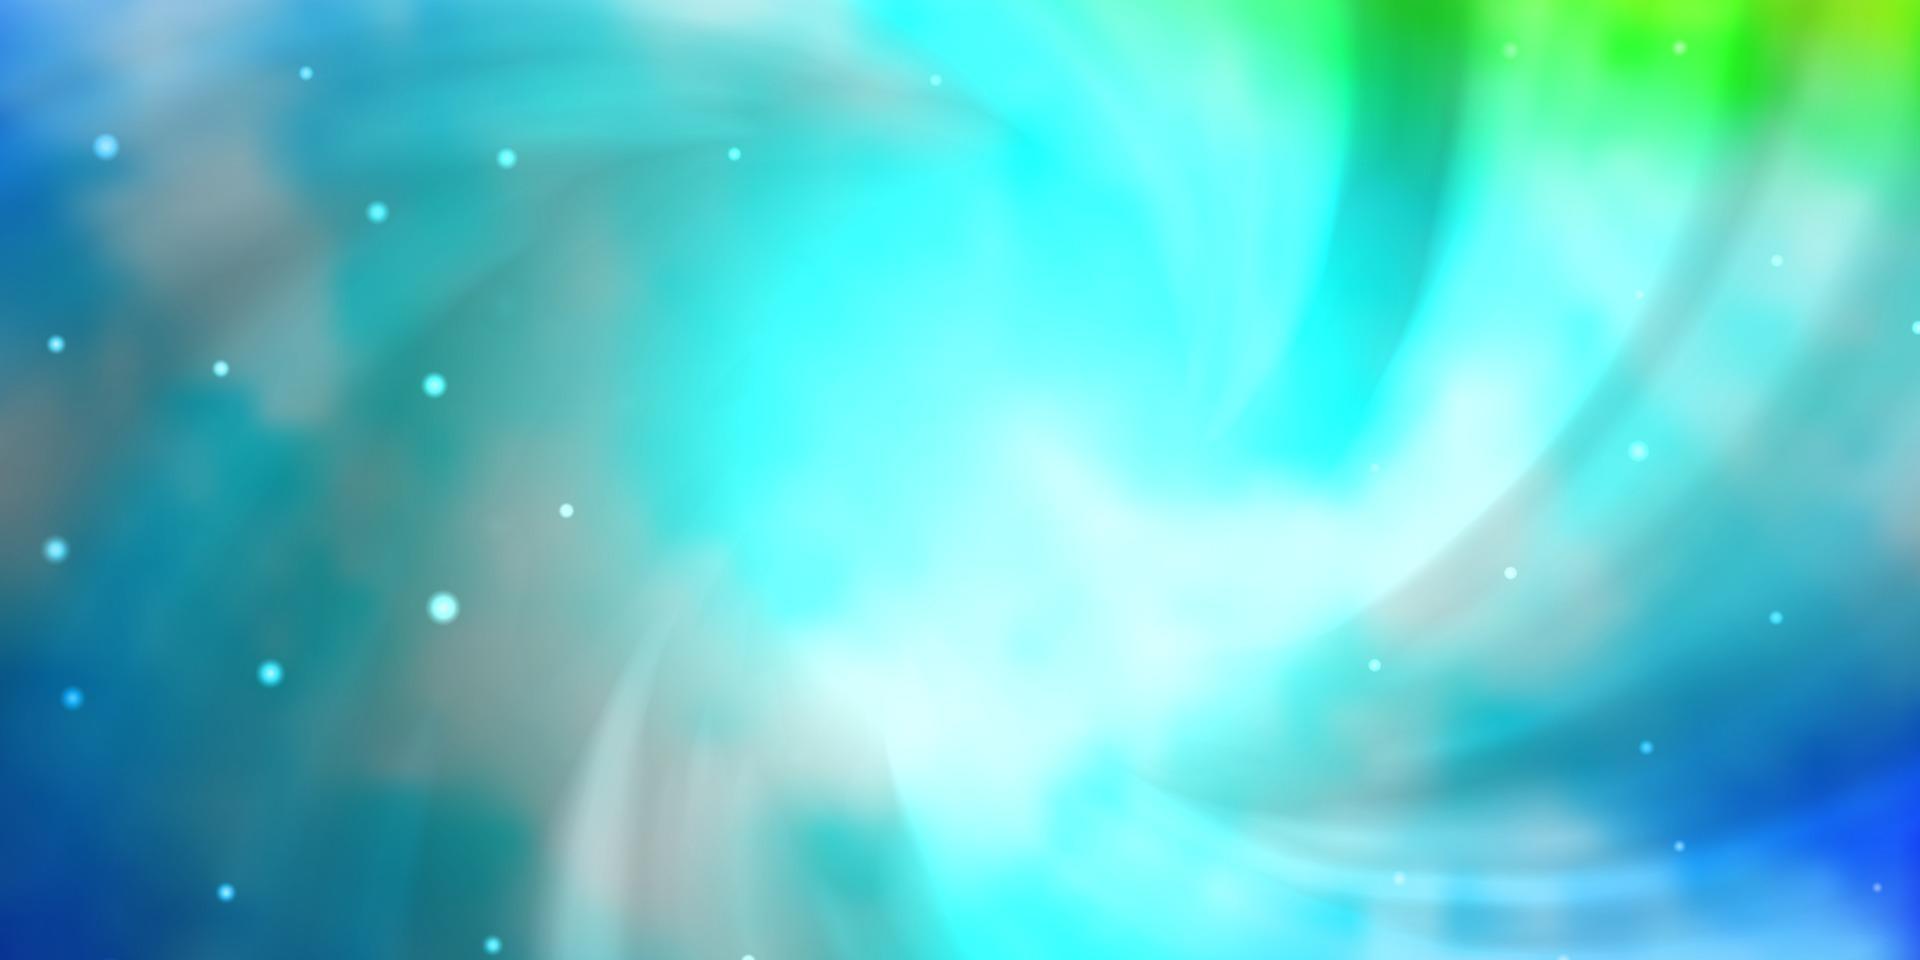 hellblaue, grüne Vektorbeschaffenheit mit schönen Sternen. vektor